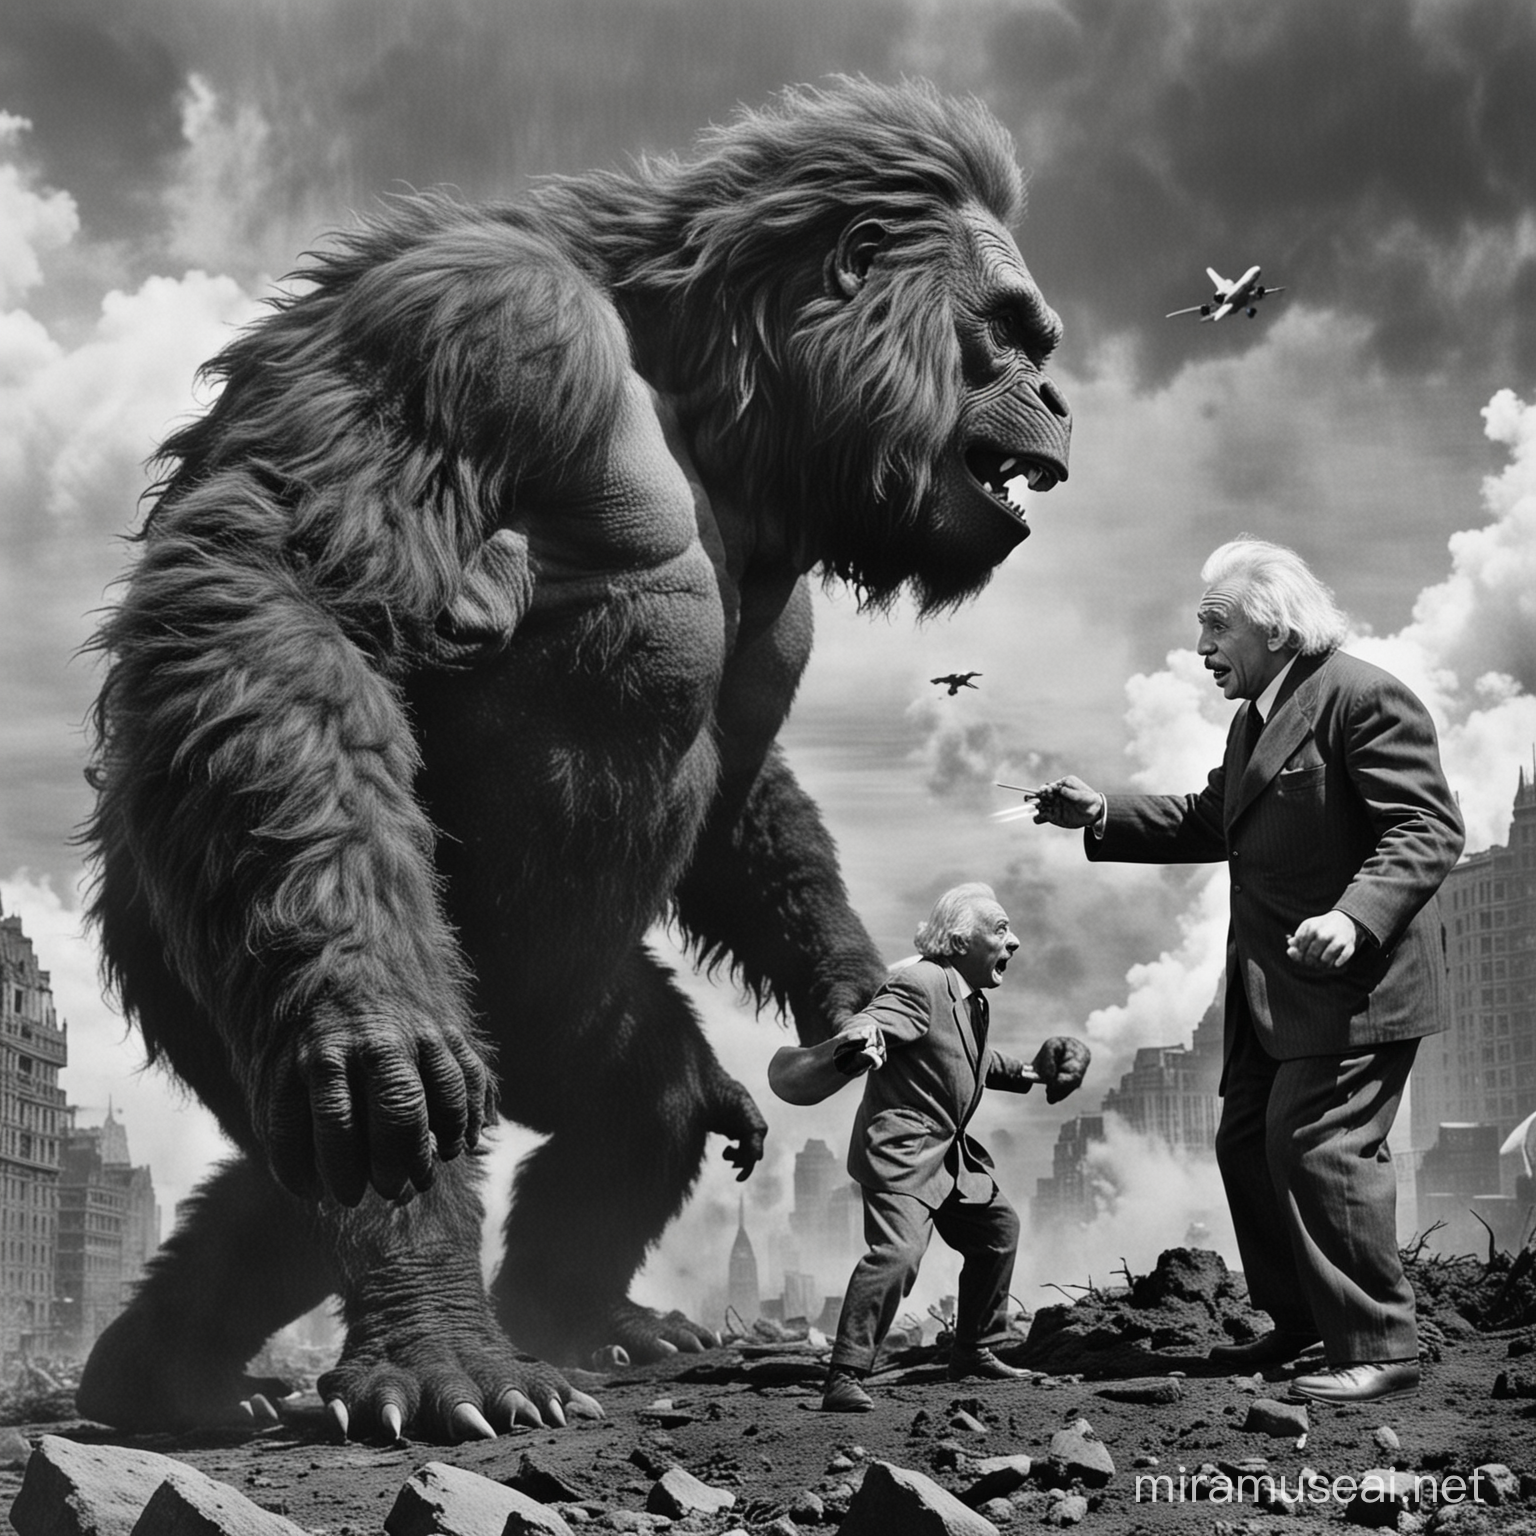 Legendary Scientist Albert Einstein Battles King Kong and Godzilla